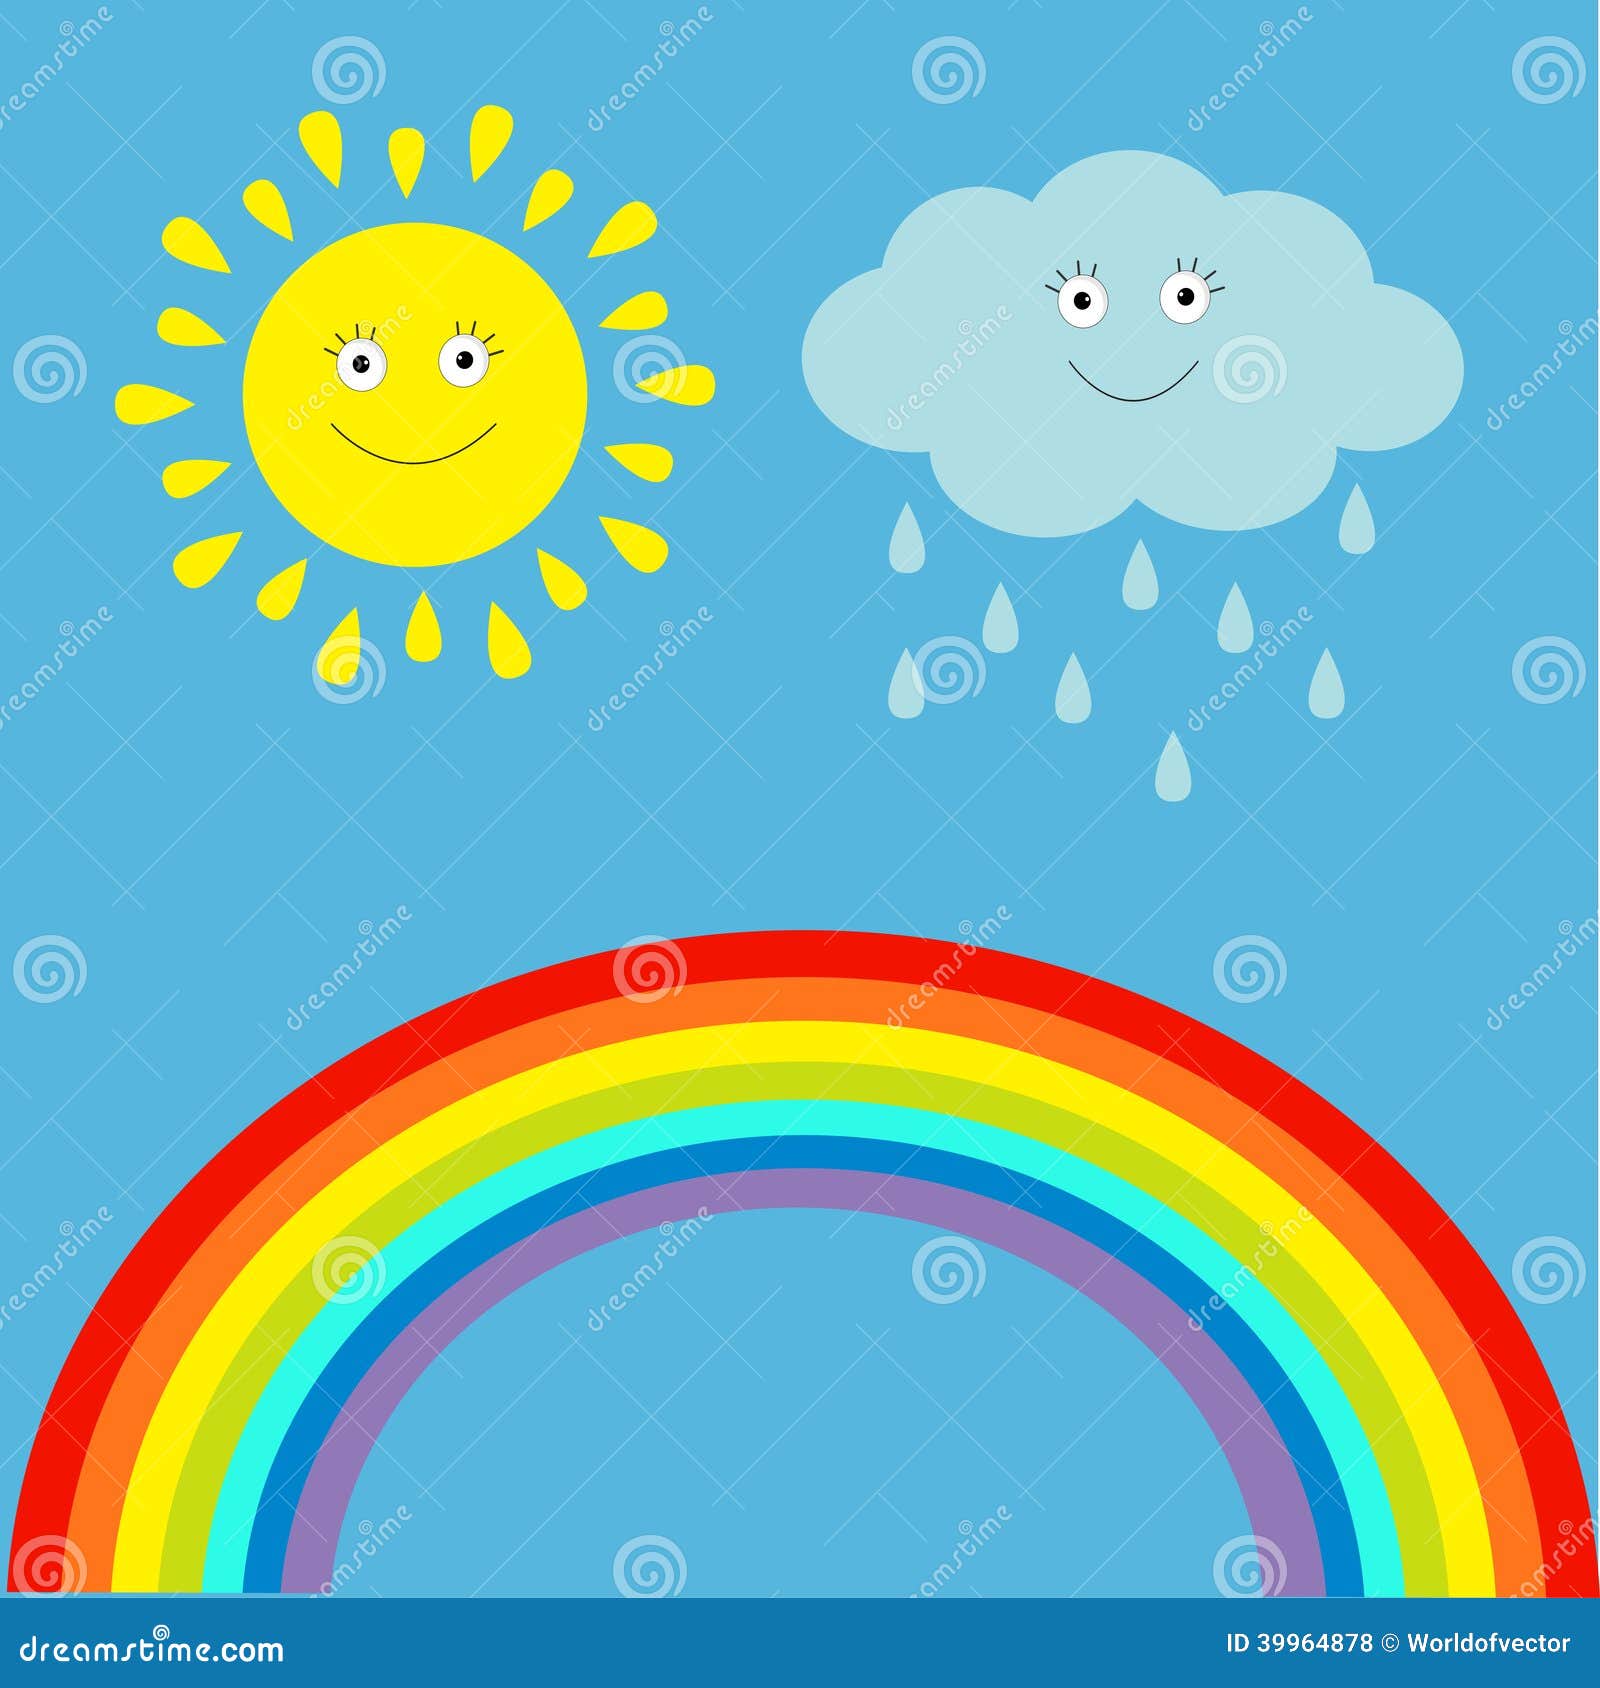 Sol kawaii colorido, nuvem, desenho animado arco-íris, chá de bebê